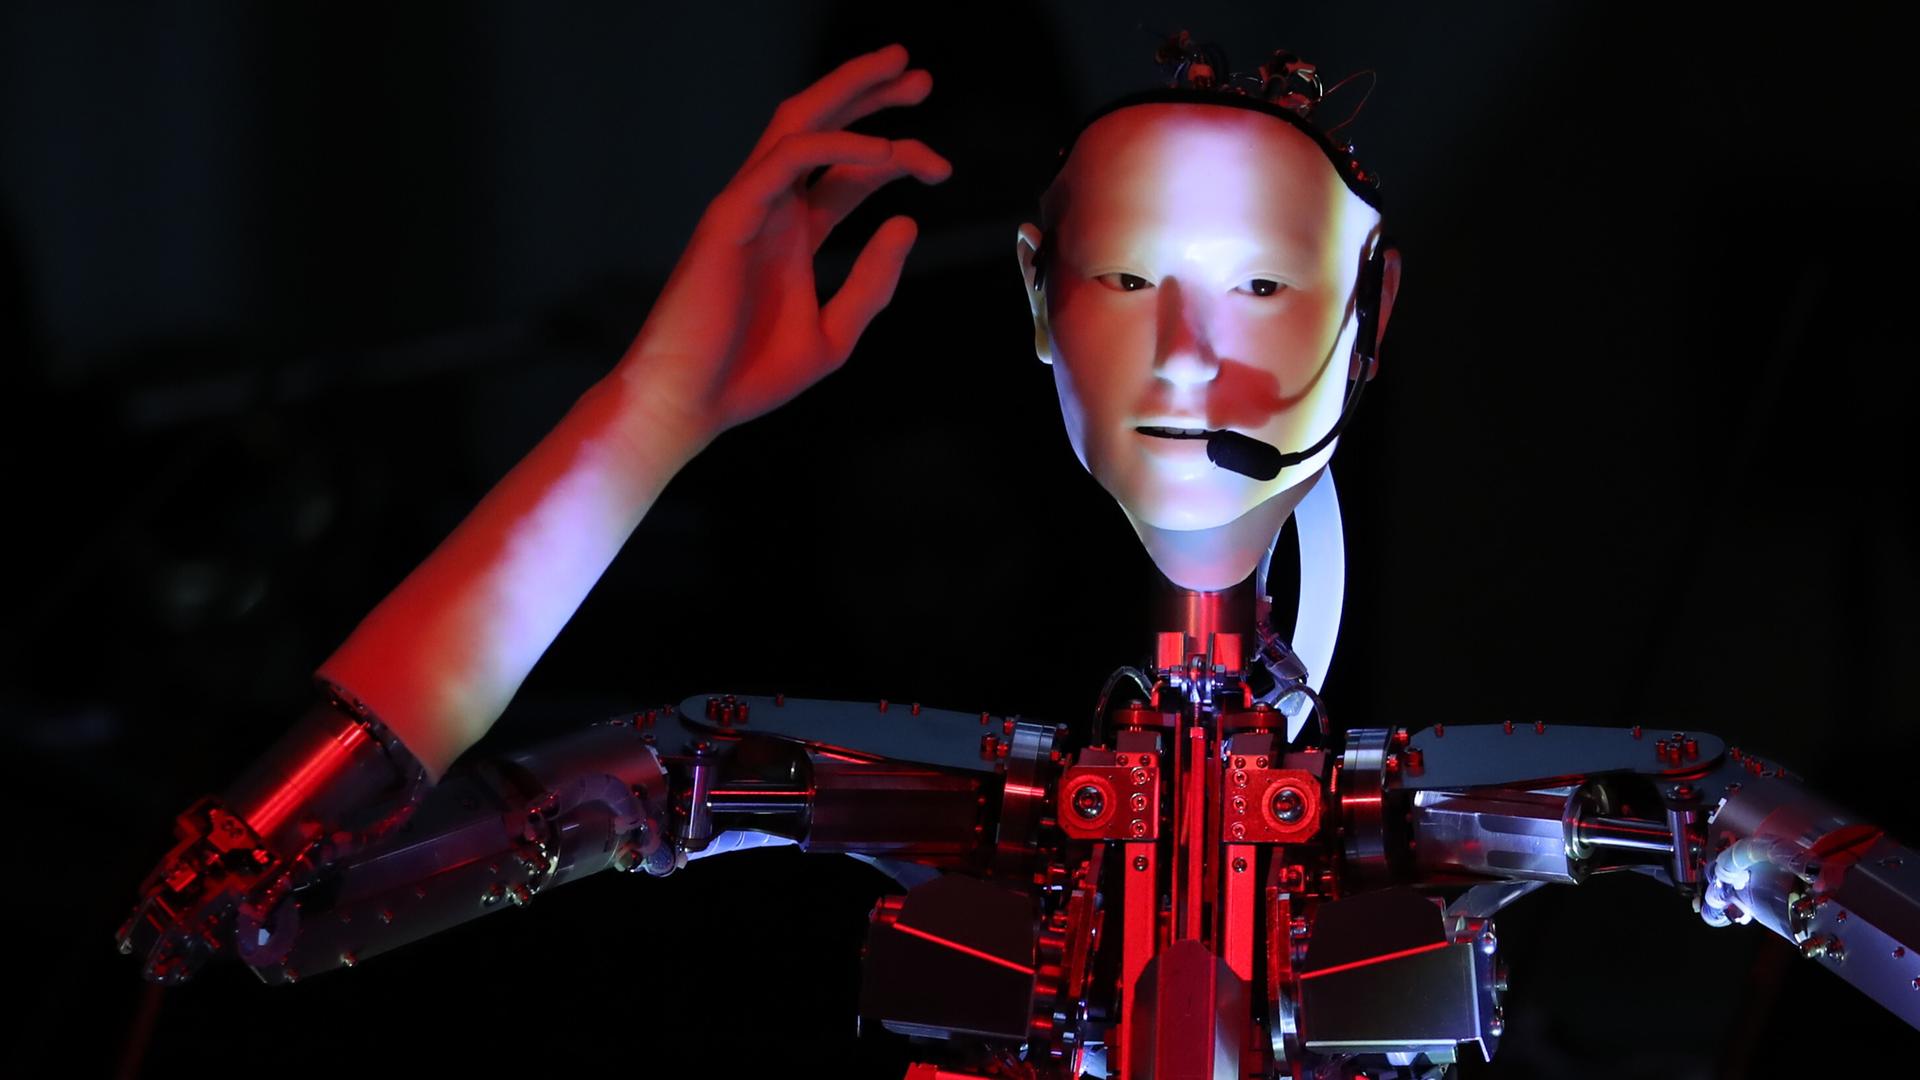 Ein Roboter mit menschlichem Gesicht, menschlichen Händen, aber mechanischen Armen und Körper.